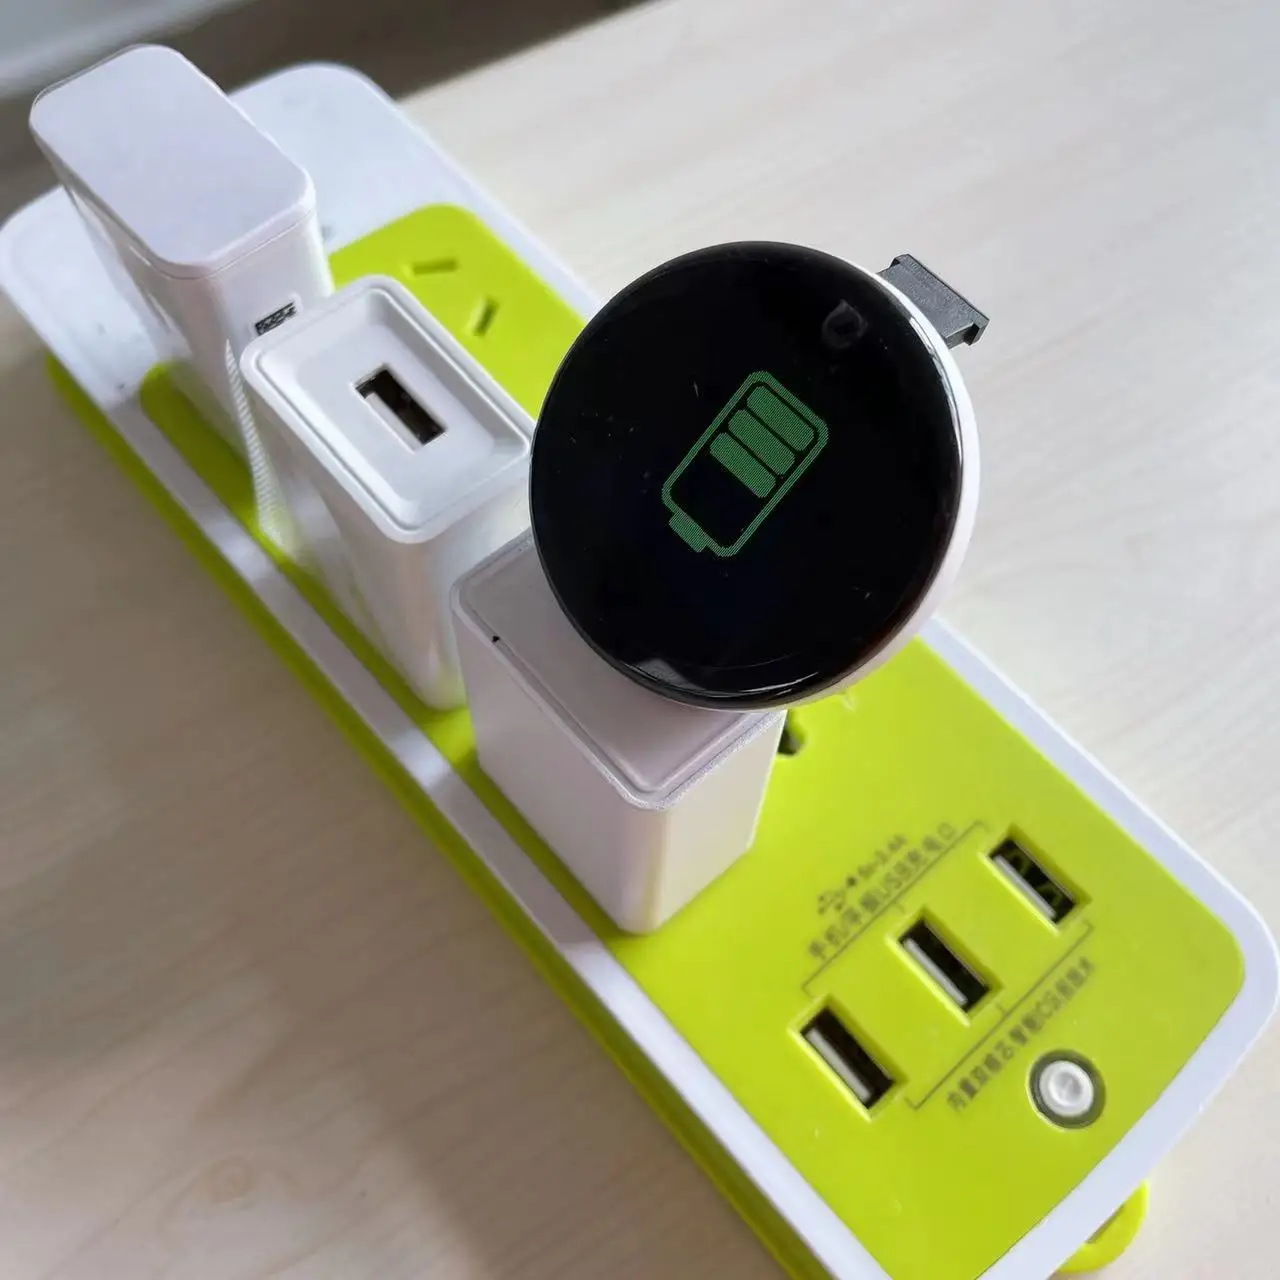 2022 Cheap price wearable devices d18 reloj inteligente pulsera waterproof band smartwatch D18 smart watch